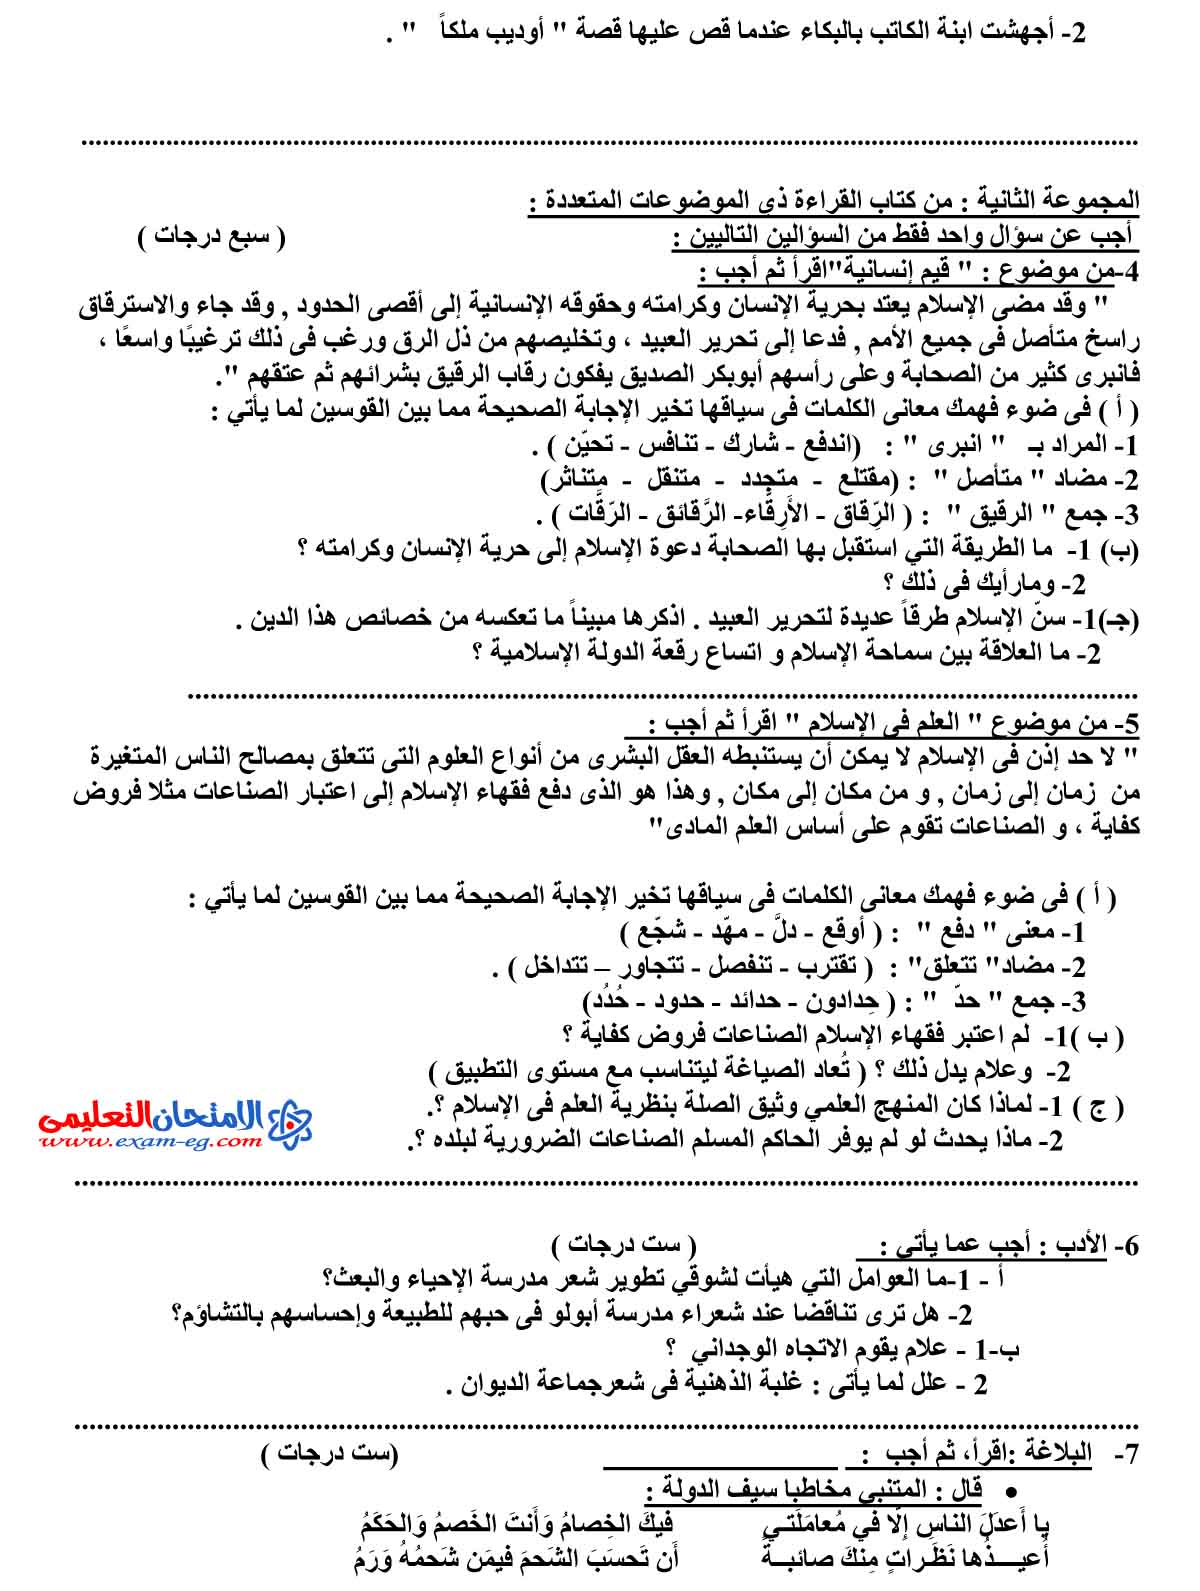 امتحان اللغة العربية 1 - مدرسة اون لاين (2)